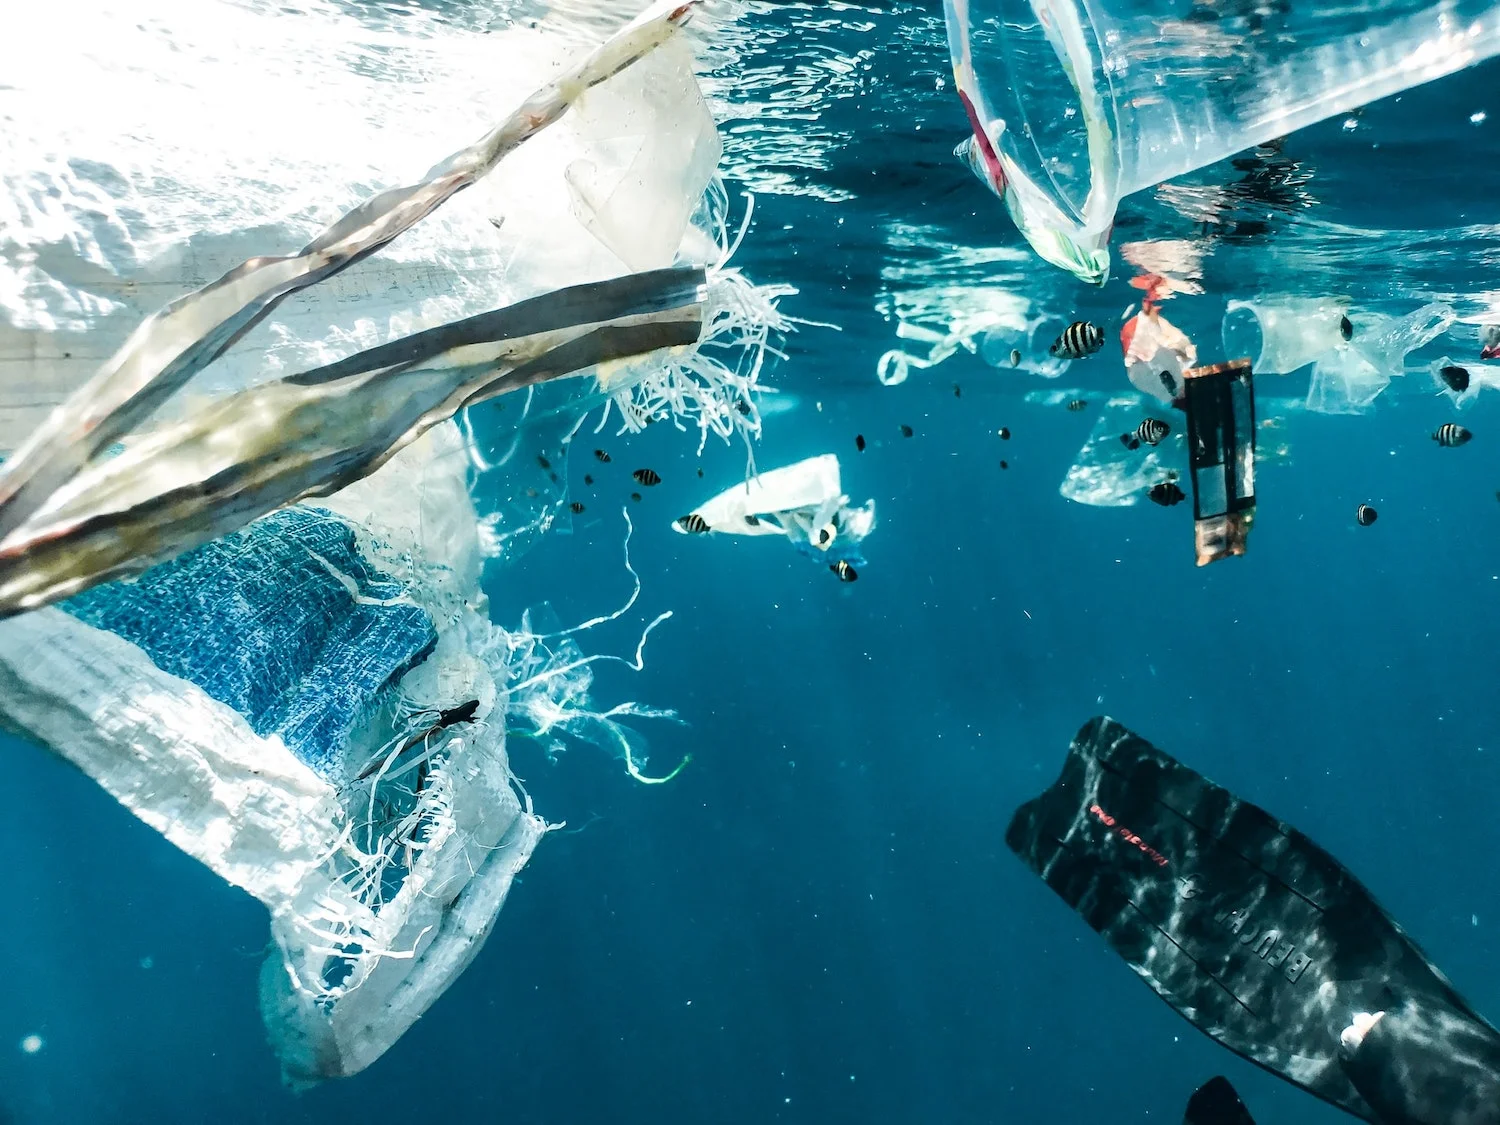 Sacs en plastique et autres objets polluants flottant dans la mer avec des poissons qui y nagent, signe d'un impact sur le climat